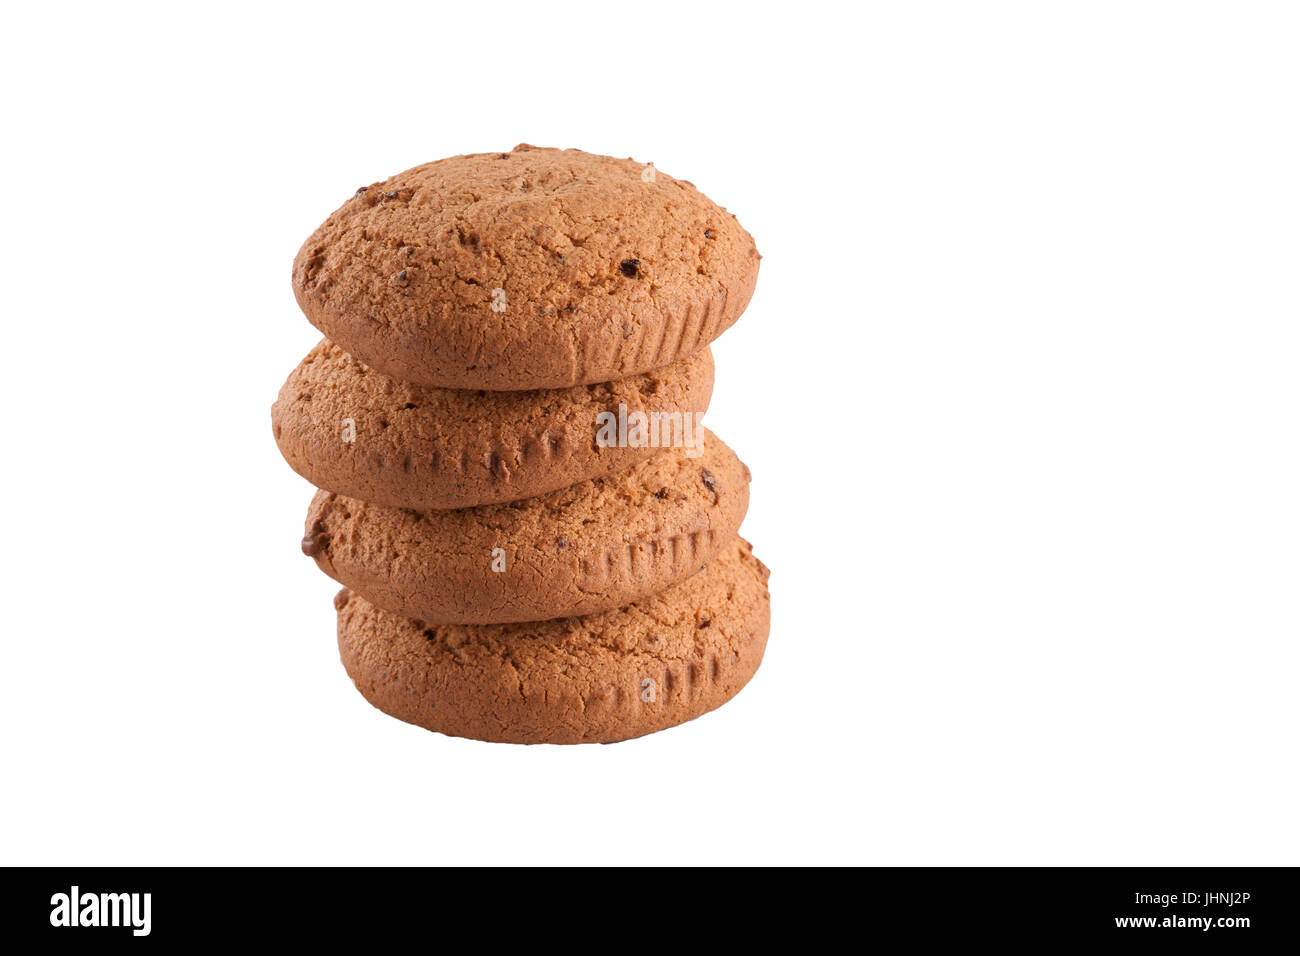 Dettaglio delle quattro dorate e croccanti biscotti di avena su bianco Foto Stock